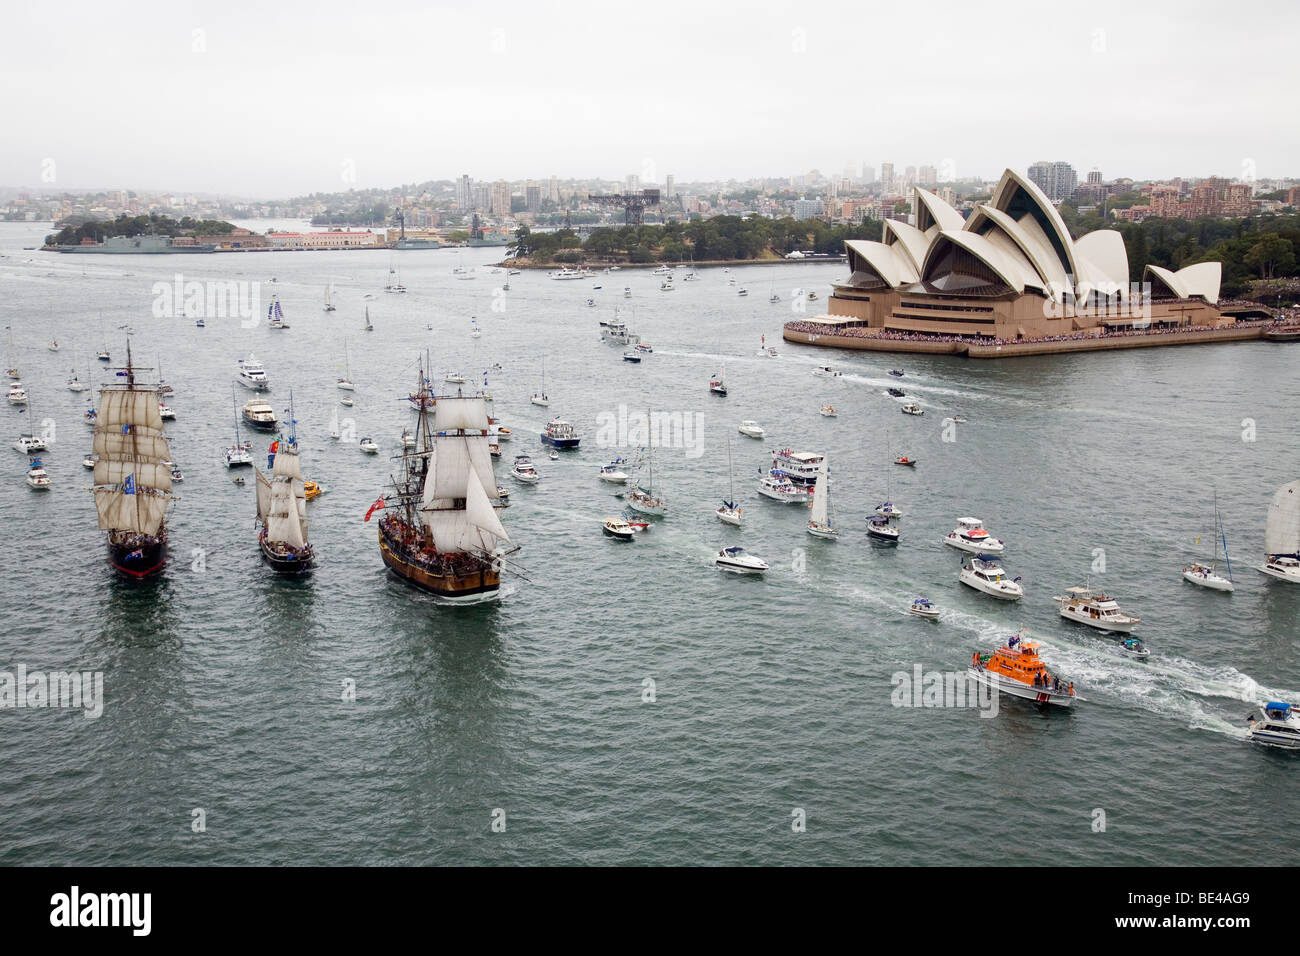 Jährlichen Tall Ships Race Regatta im Hafen von Sydney - Australia Day Feier. Sydney, New South Wales, Australien Stockfoto